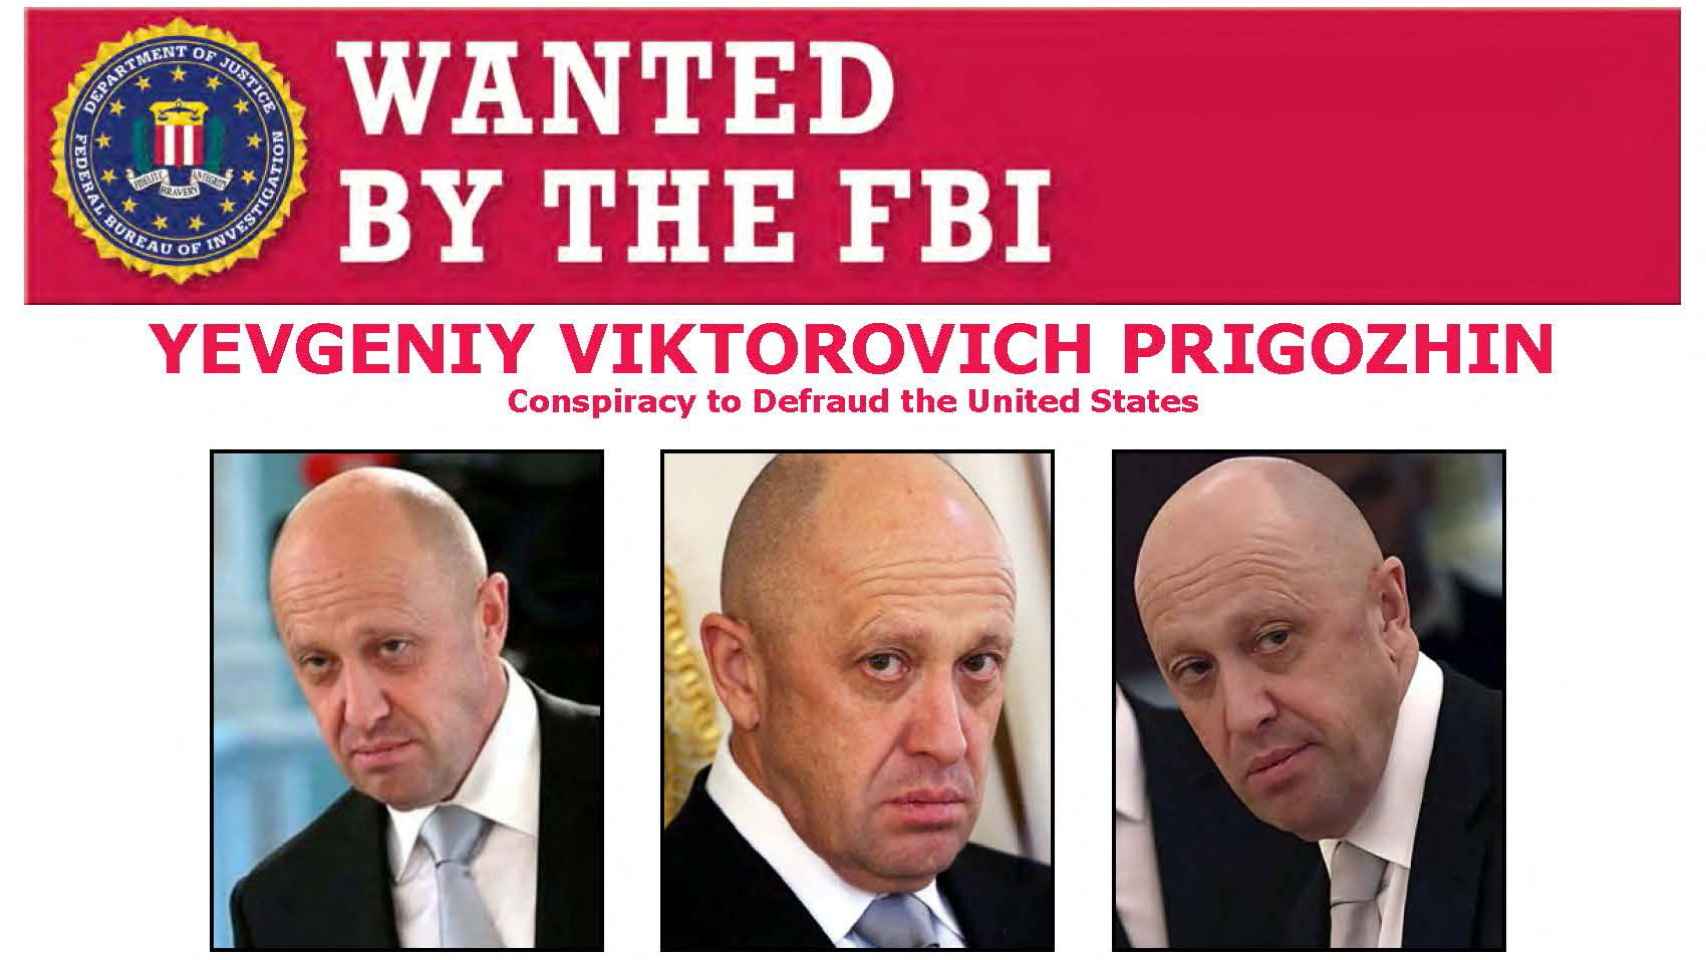 Un cartel del FBI donde se ve a Yevgeniy Prigozhin, uno de los oligarcas rusos más próximos a Putin.